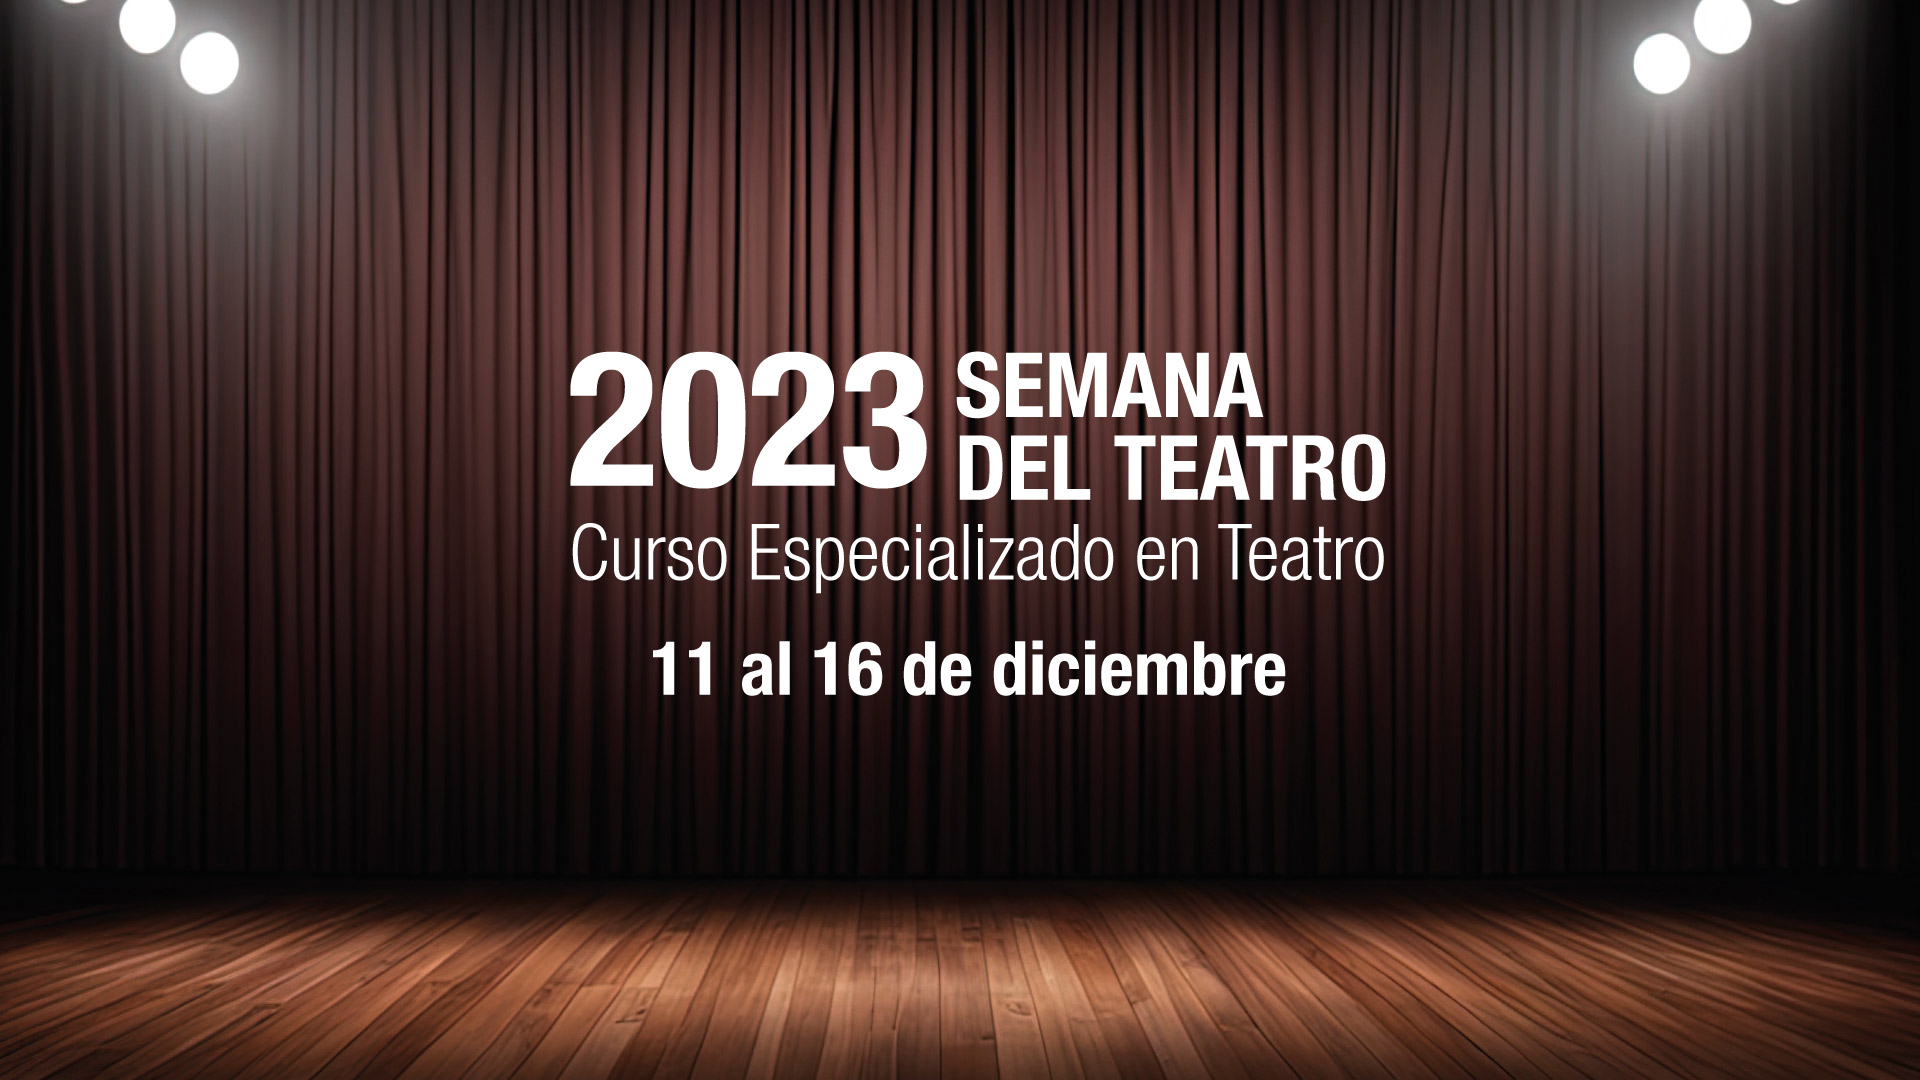 El Instituto de Bellas Artes se prepara para la Semana del Teatro 2023